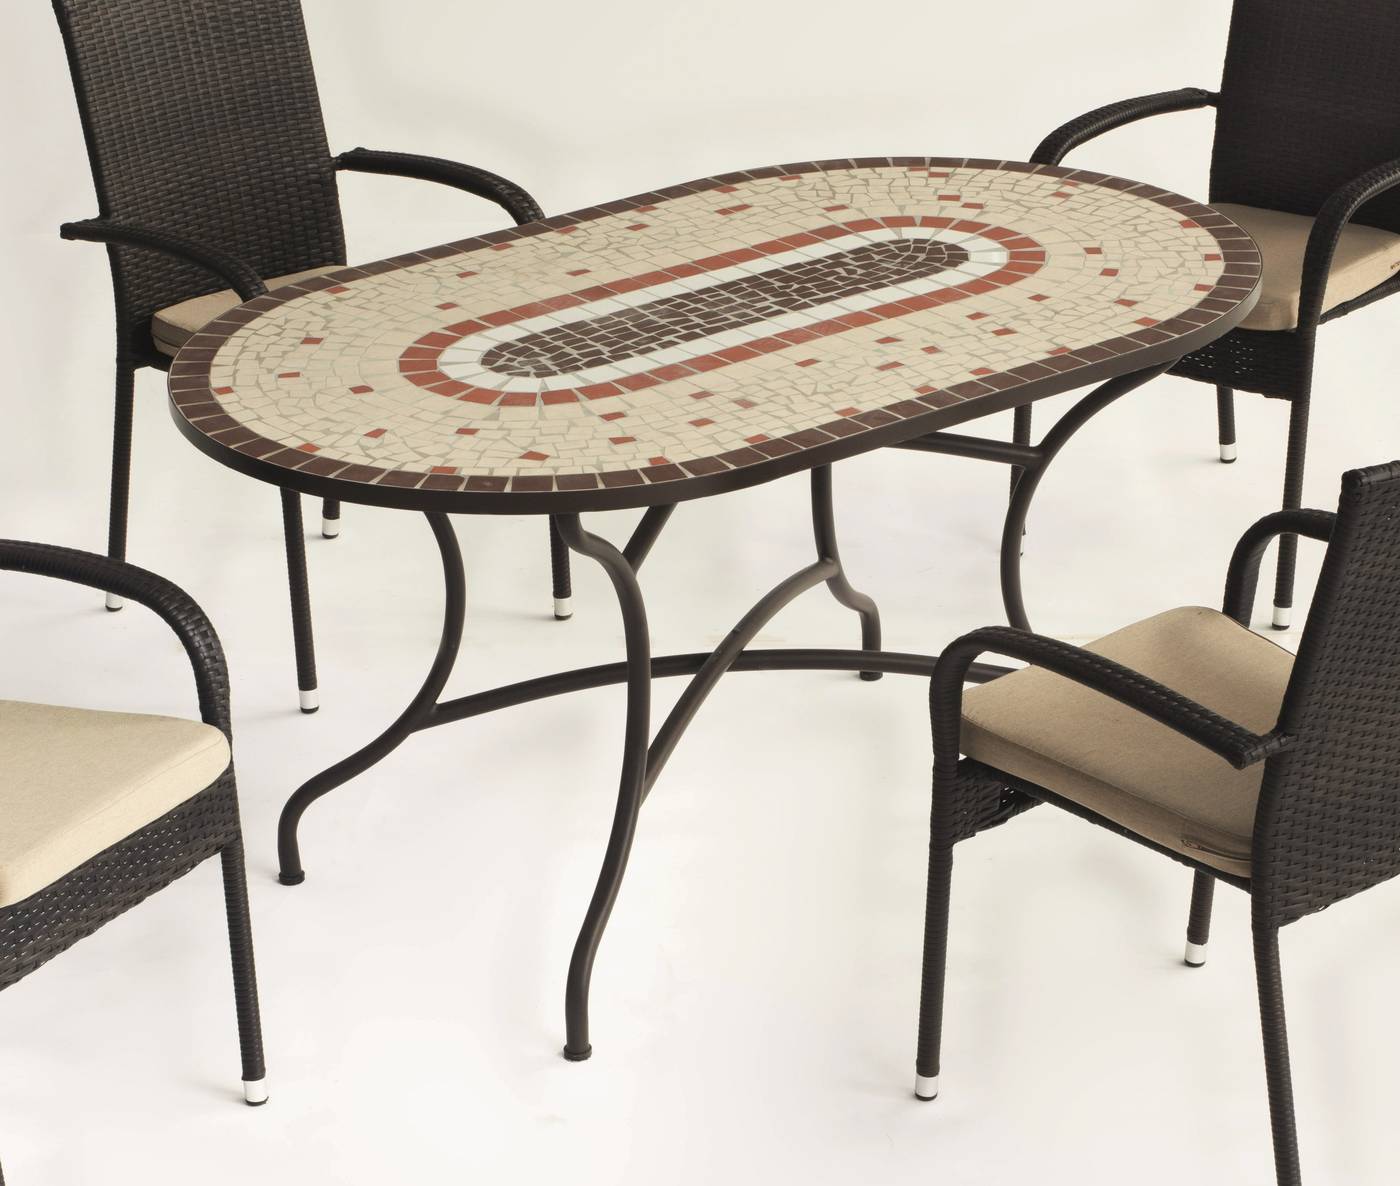 Conjunto Mosaico Malaya-Shifa - Conjunto de forja color bronce: mesa con tablero mosaico de 150 cm + 4 sillones con cojines asiento.